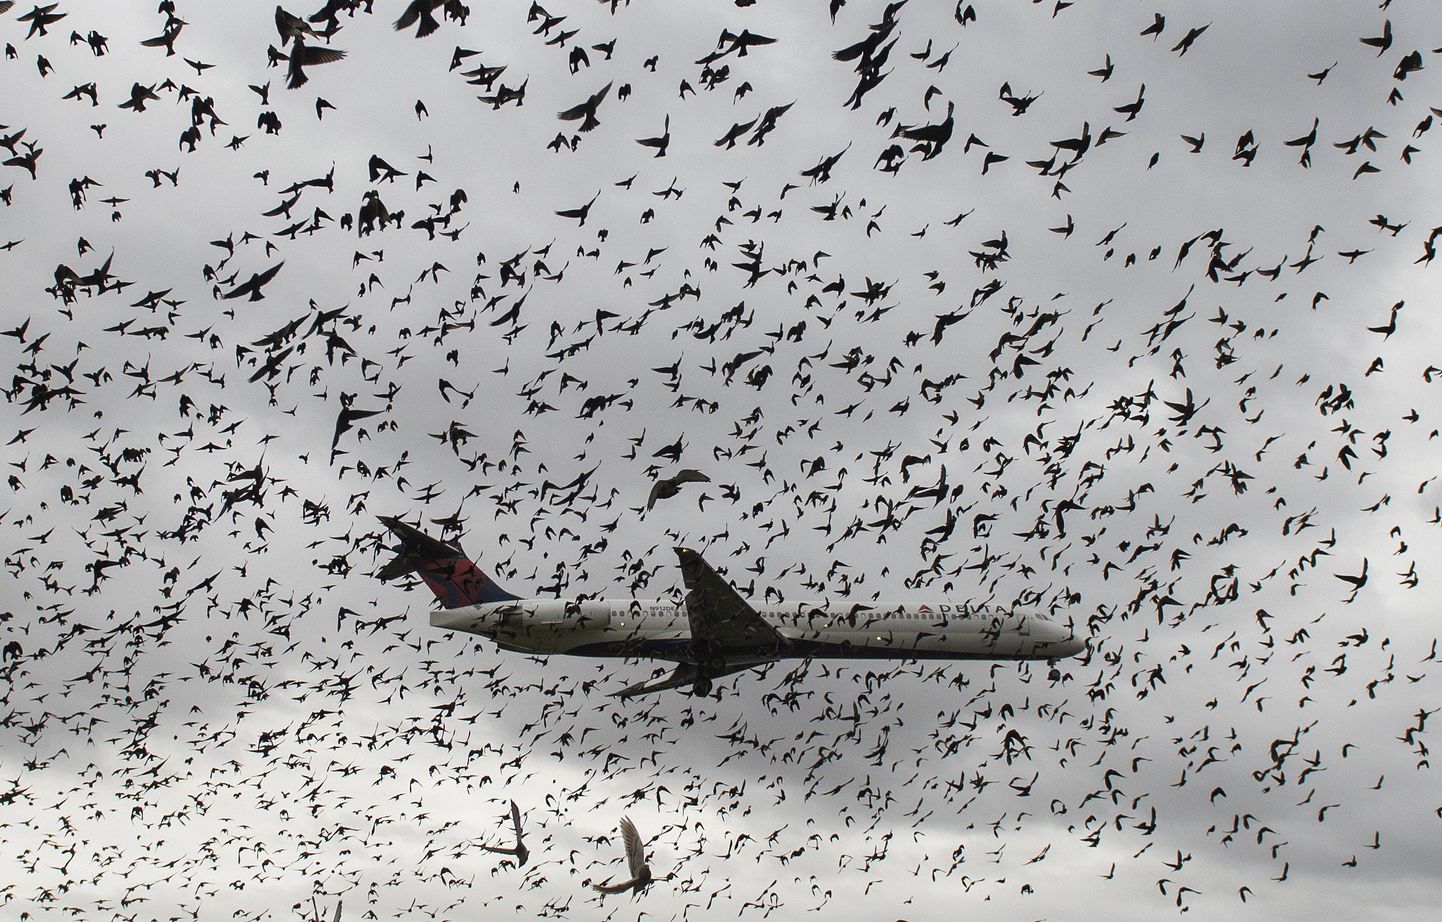 Delta Airlinesi lennuk maandumas läbi linnuparve, pilt illustratiivne